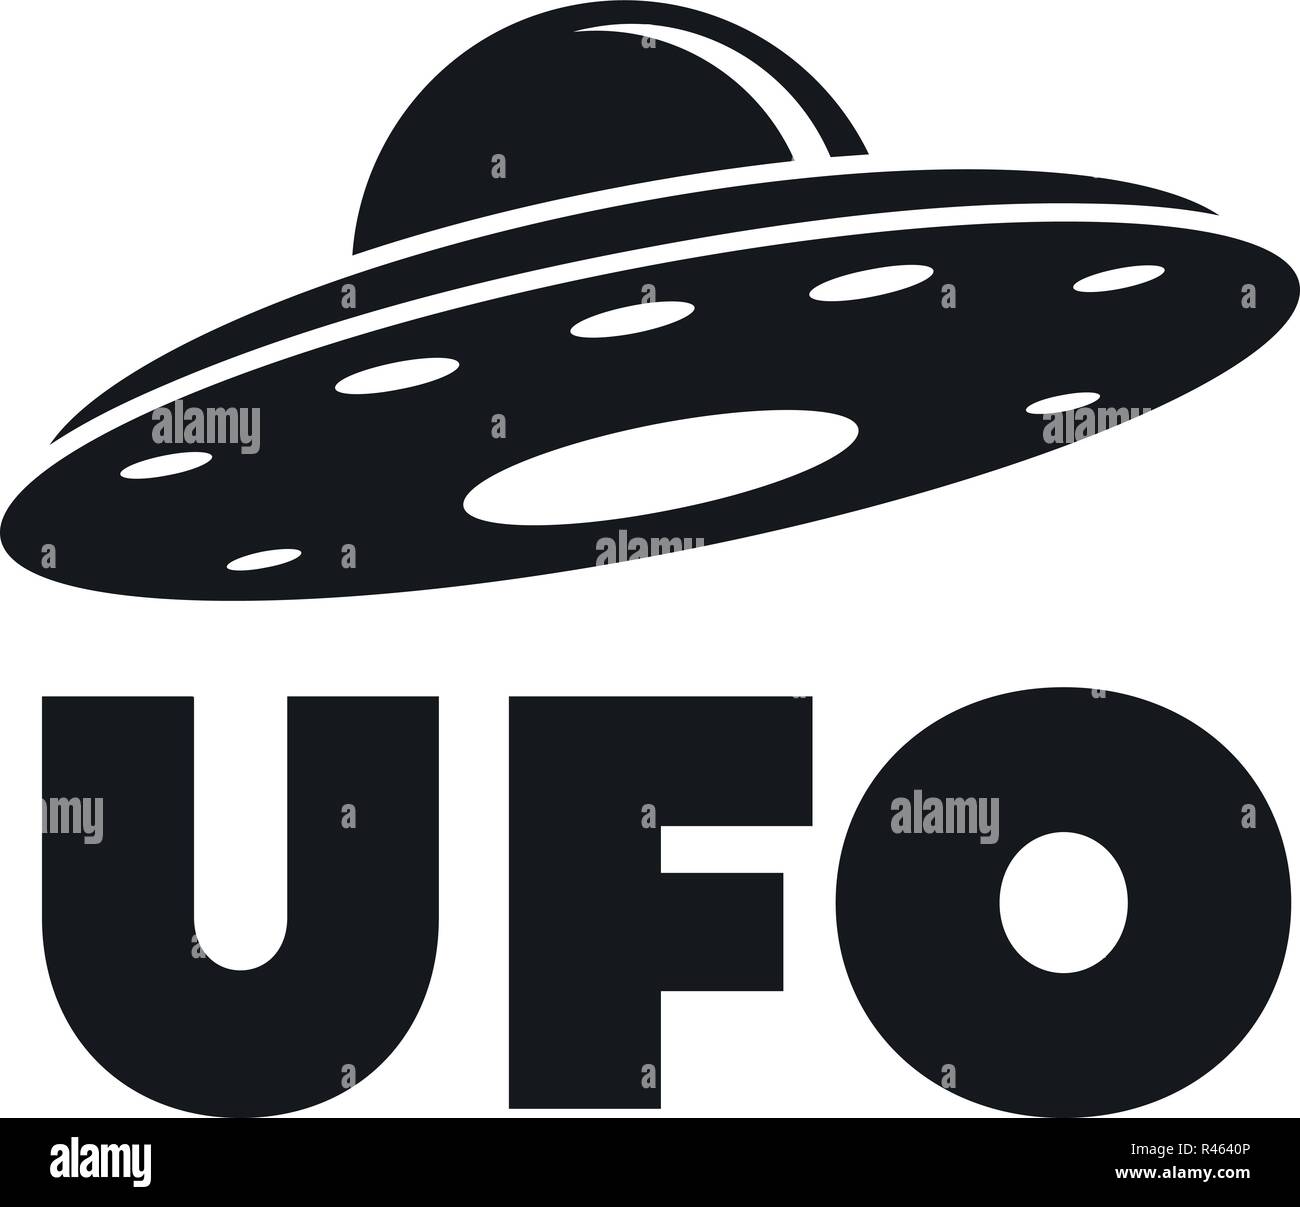 Ufo Schiff Logo. Einfache Abbildung der Ufo-Schiff vektor Logo für Web Design auf weißem Hintergrund Stock Vektor